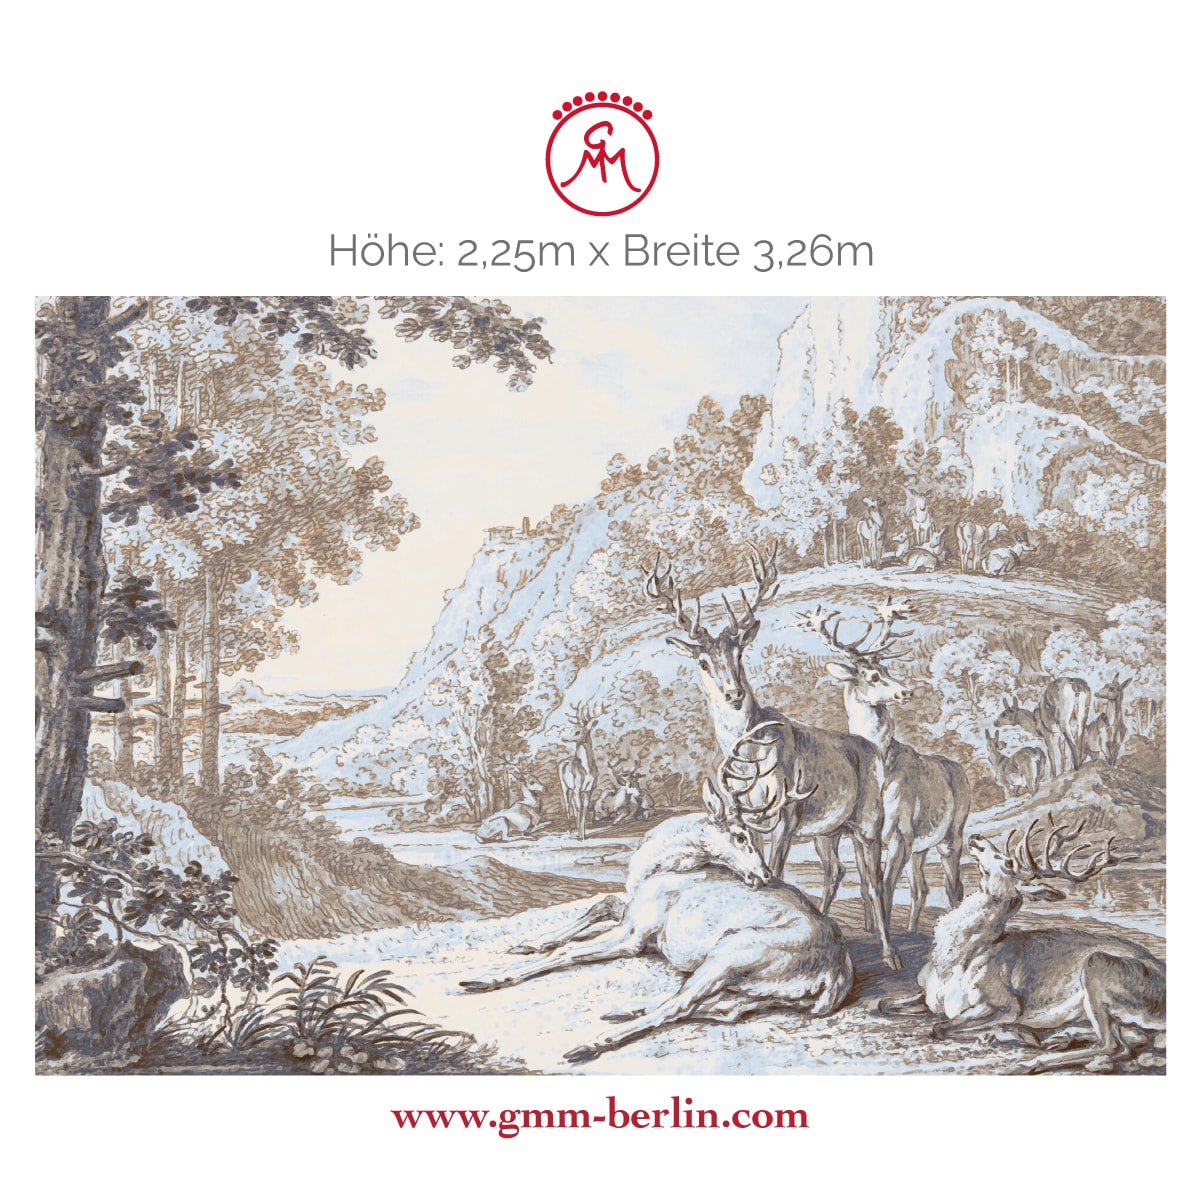 Exkusive Panoramatapete: Klassische Kunst Tapete "Hirsche in Landschaft" nach Johann Elias Ridinger